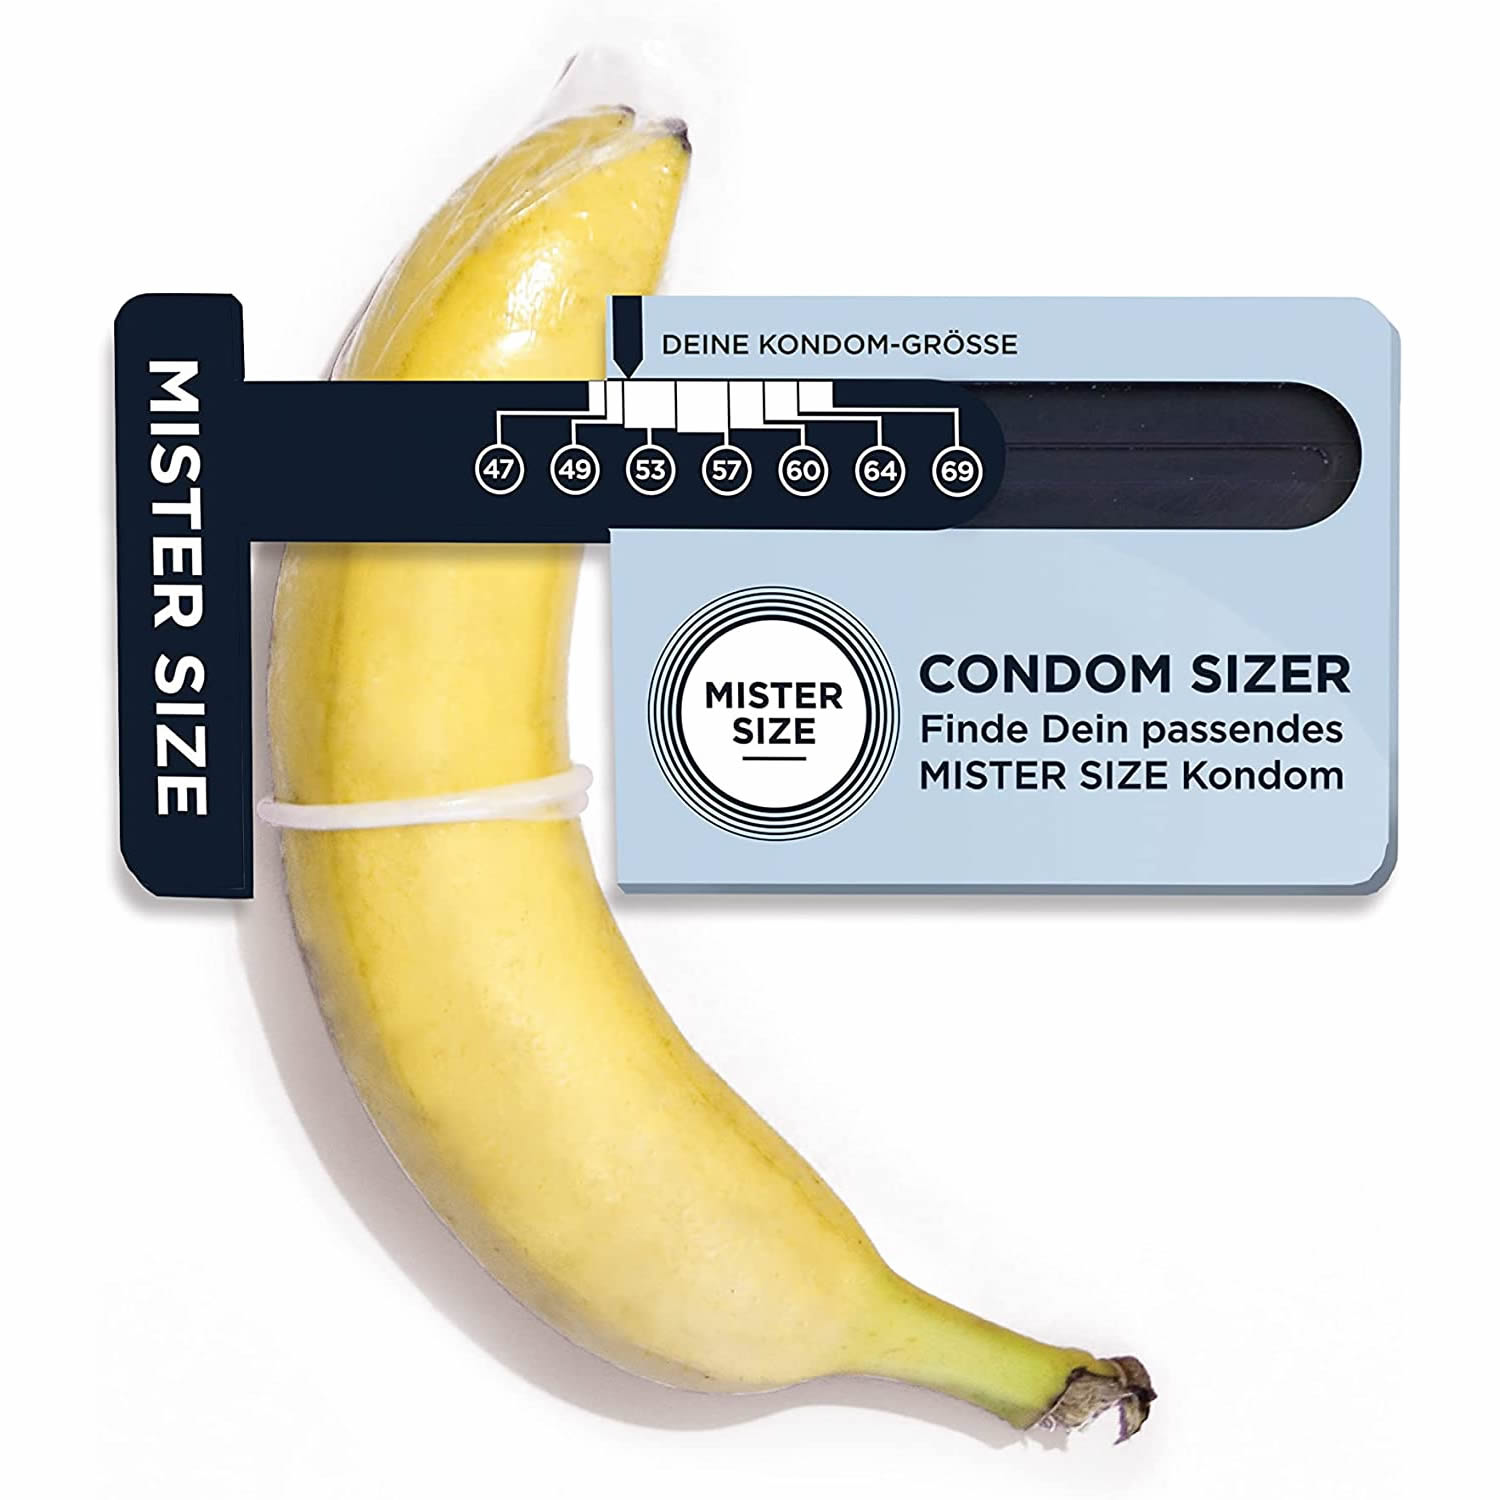 Mister Size «Condom Sizer» Bestimmen Sie jetzt Ihre Kondomgröße (Deutsch)